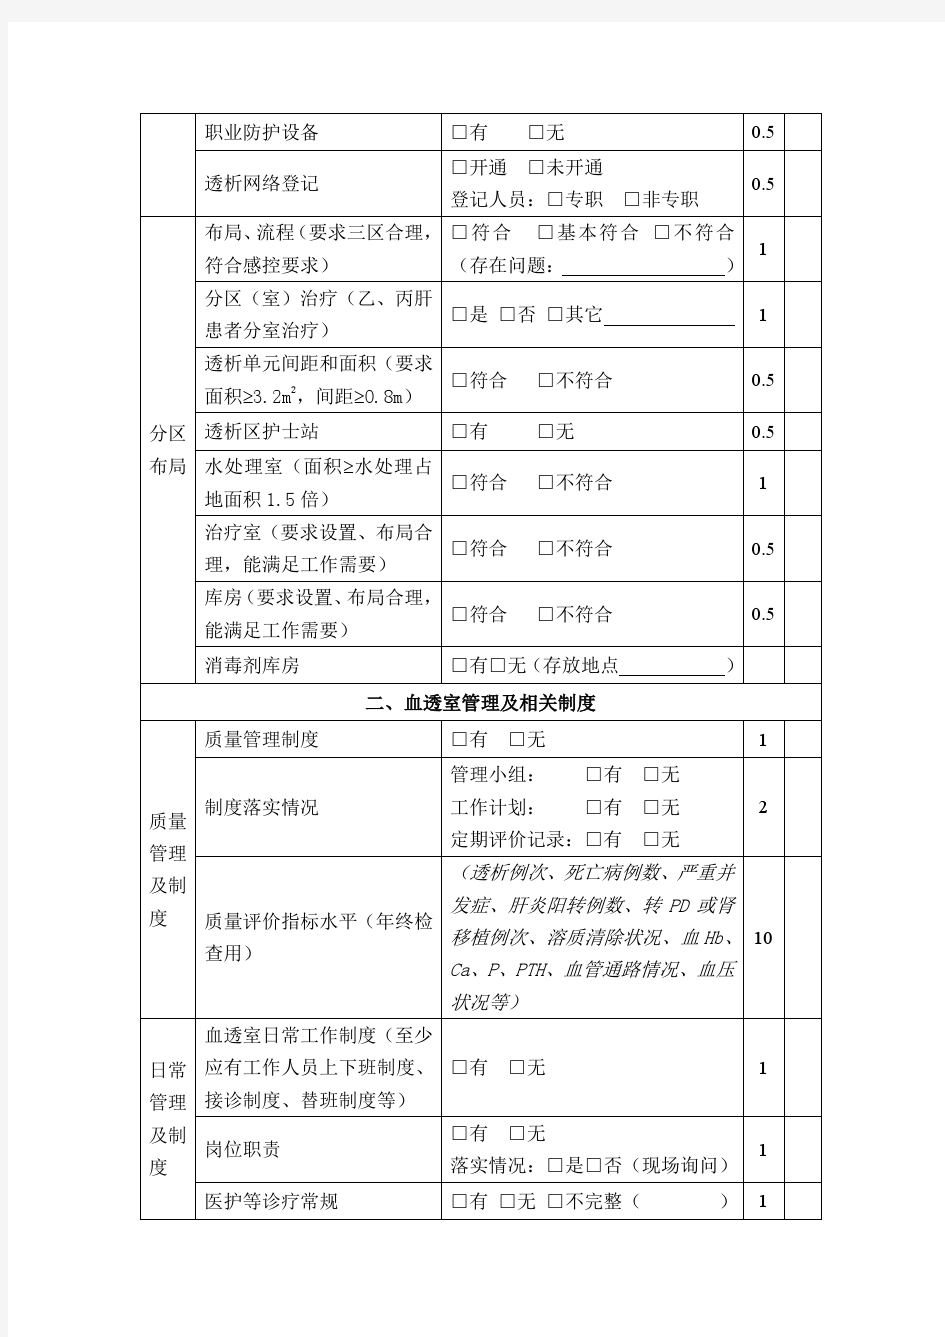 2015年上海市血液透析质量控制中心质量督查表